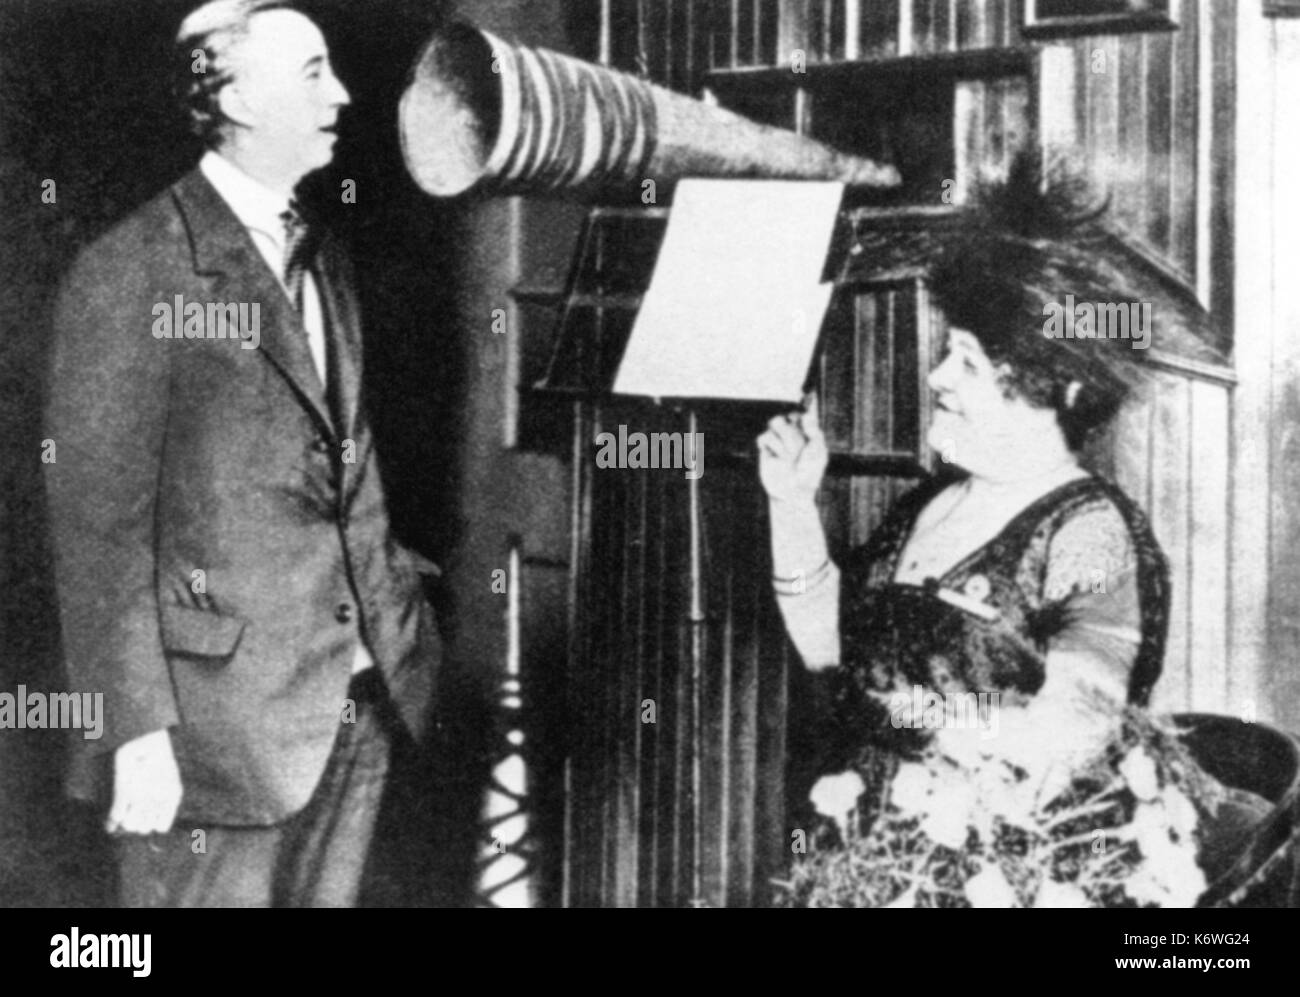 Luisa Tetrazzini beats Zeit während der ältere George Formby bildet einen Datensatz. Frühe Aufnahme. LT: Italienische Sopranistin (29. Juni 1871 - 28. April 1940). Stockfoto